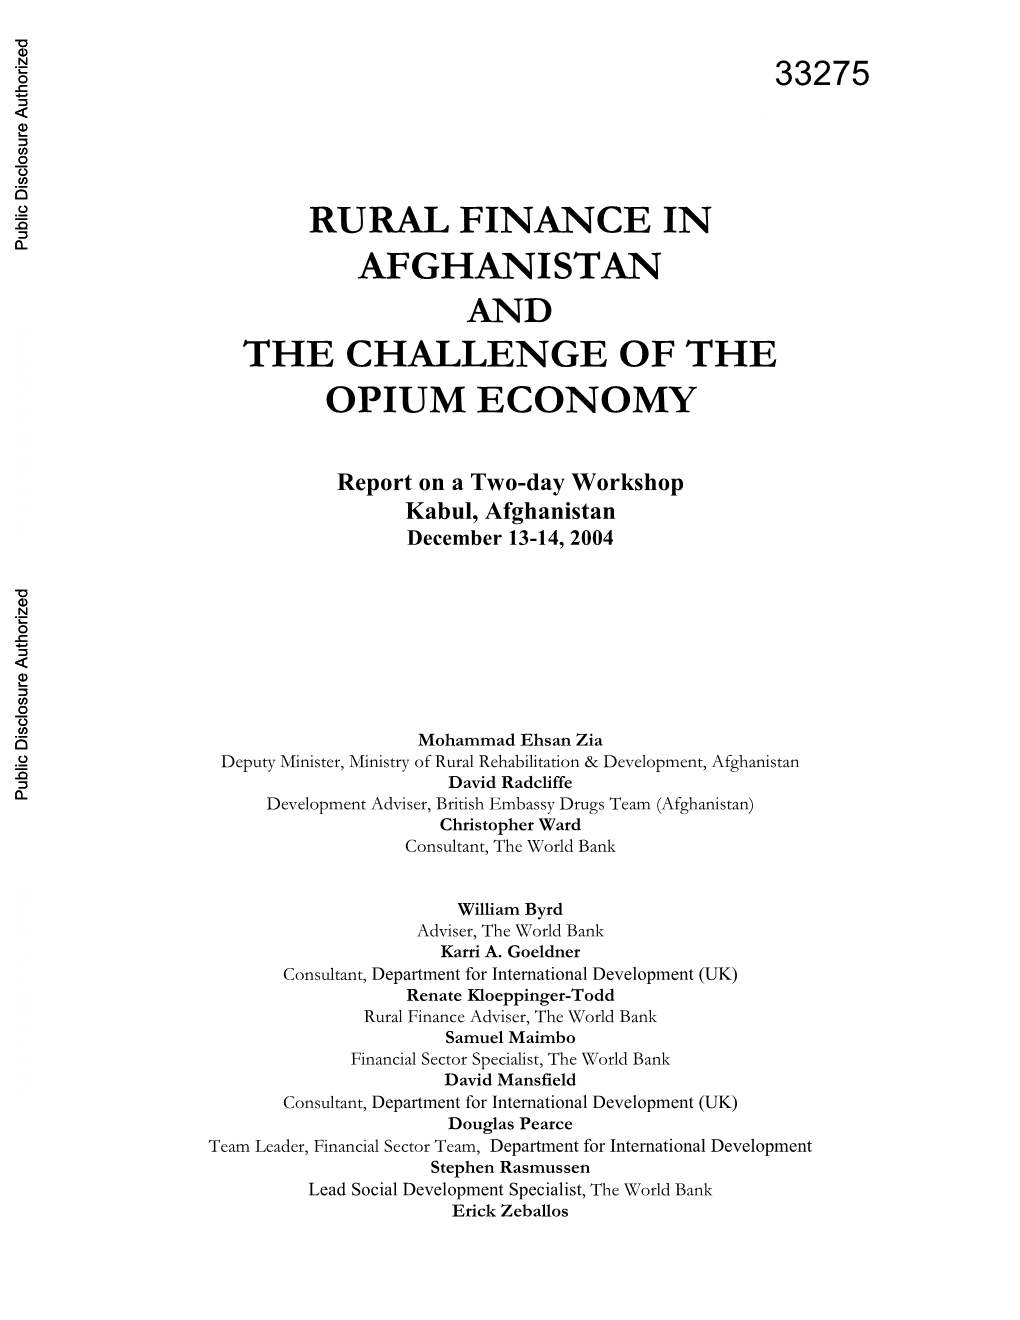 Rural Finance in Afghanistan